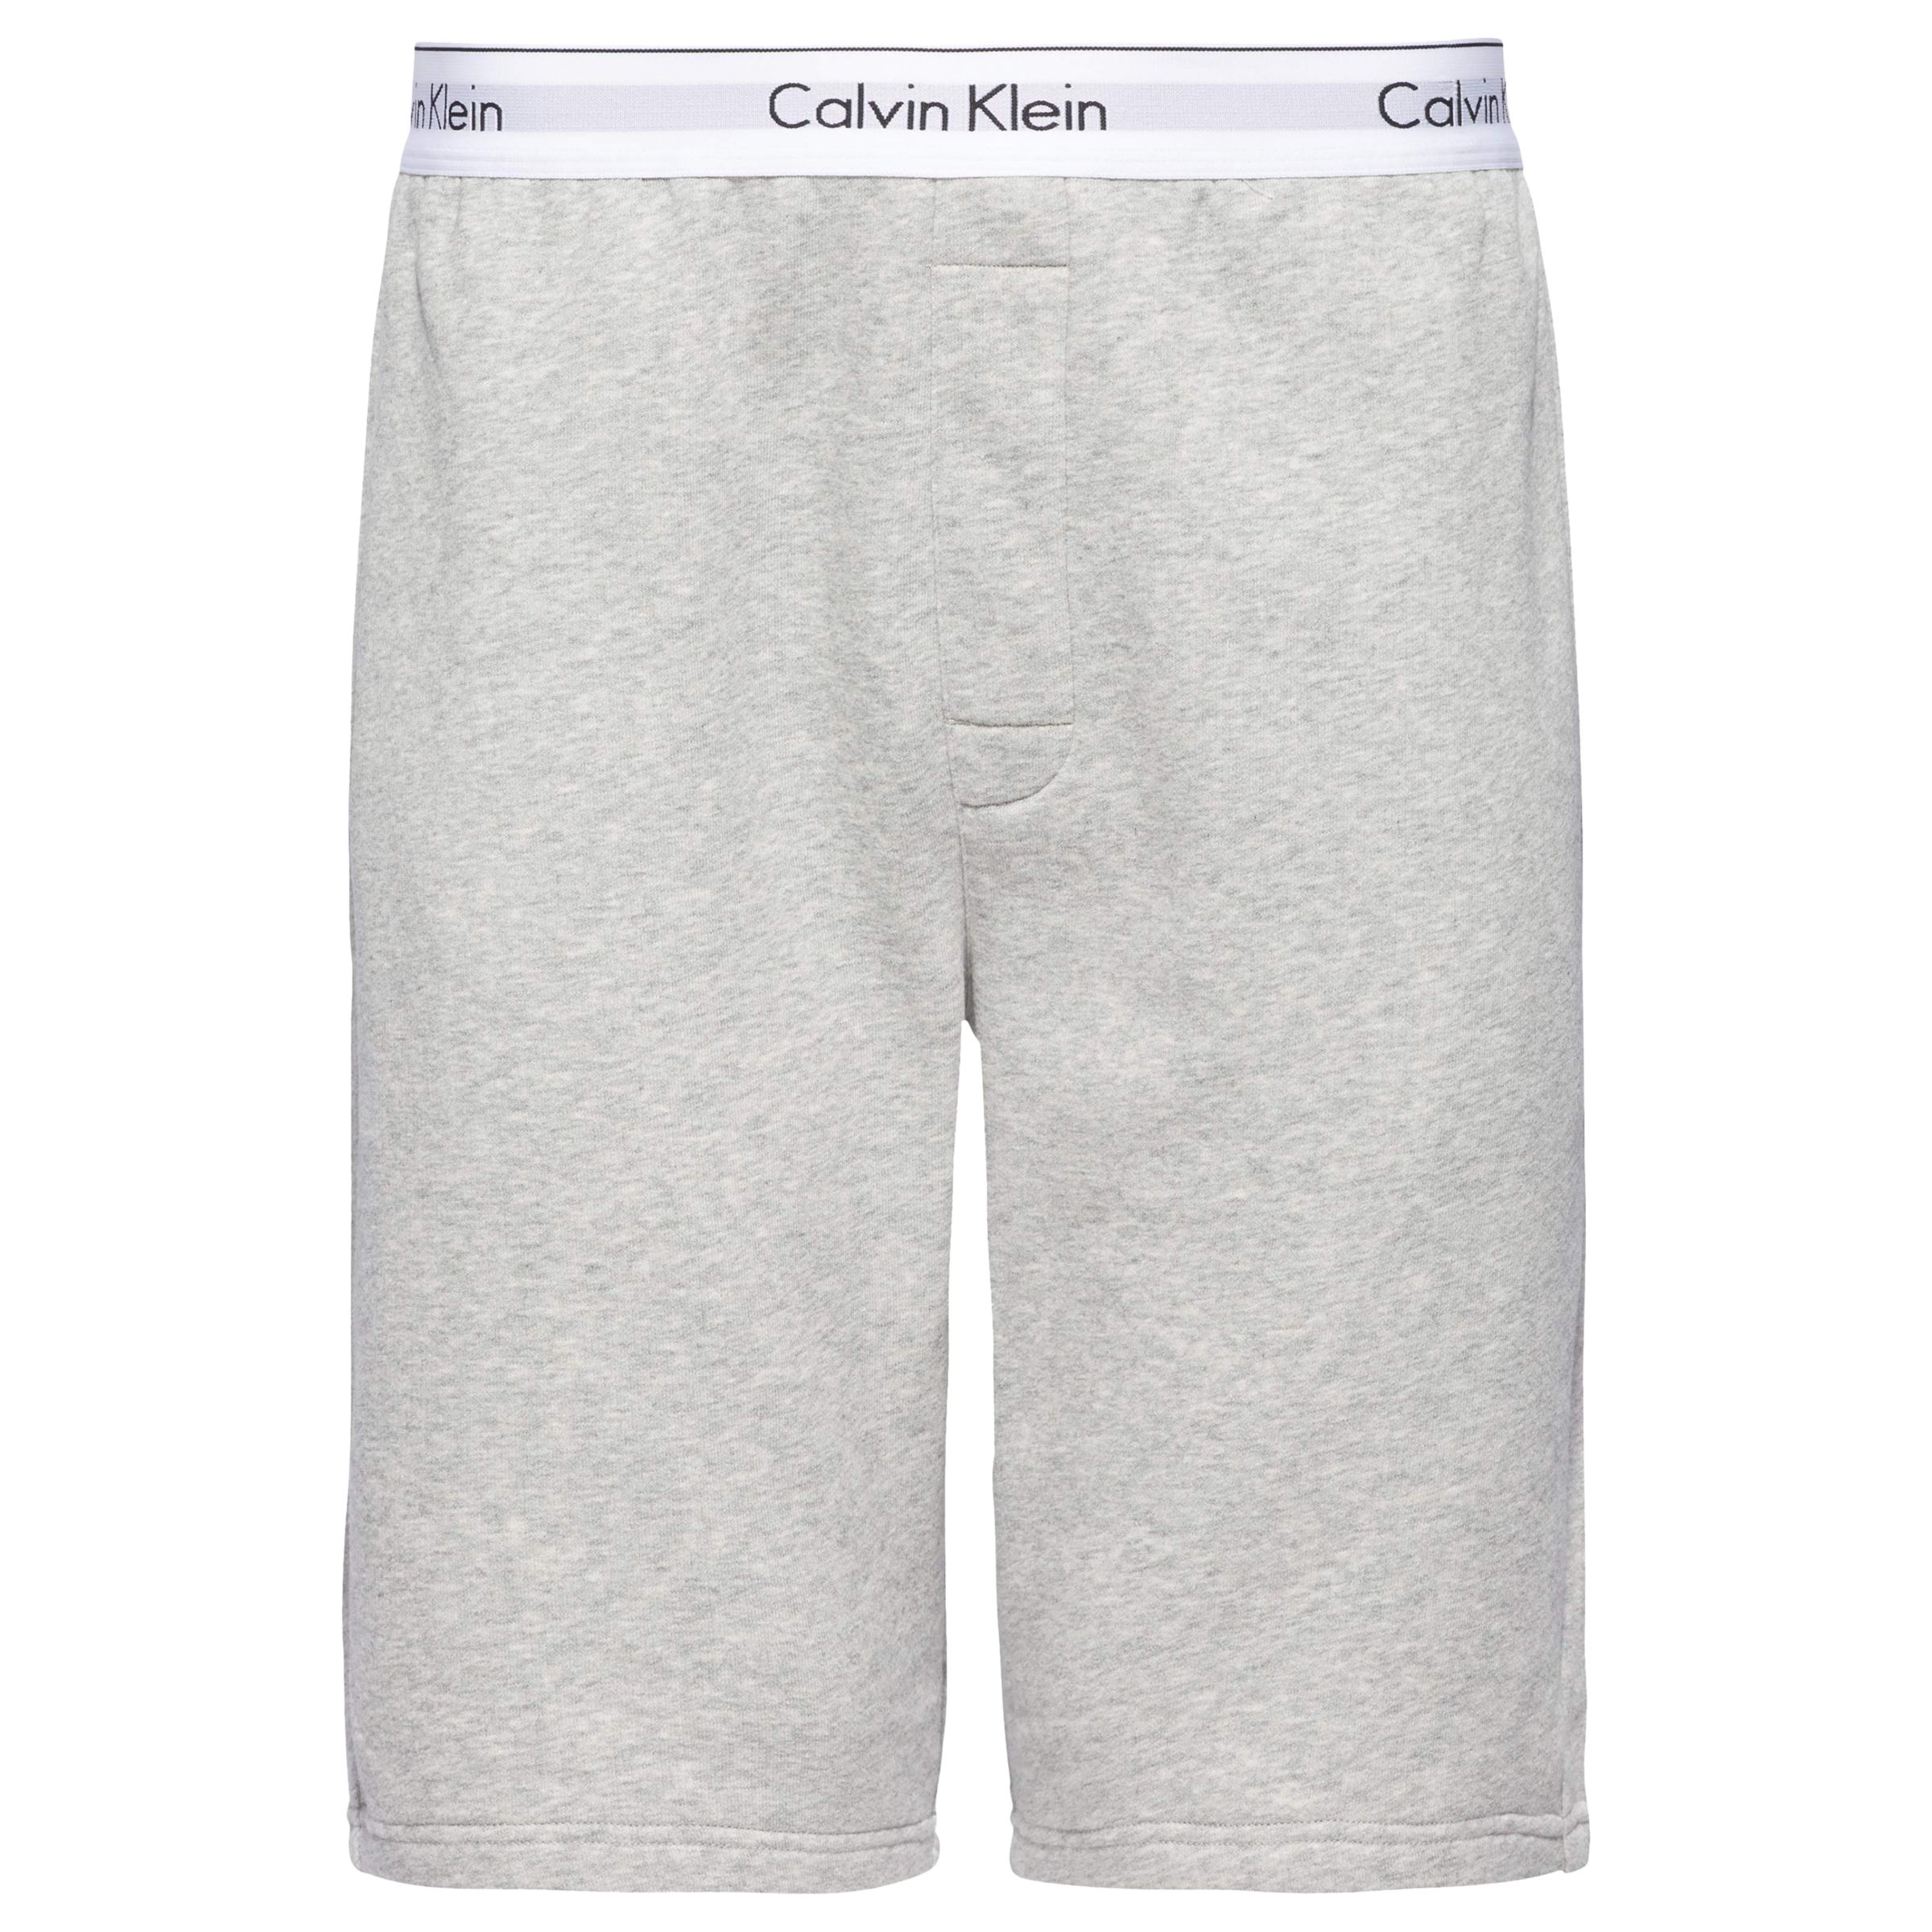 Calvin Klein CK Modern Cotton Lounge Shorts at John Lewis & Partners